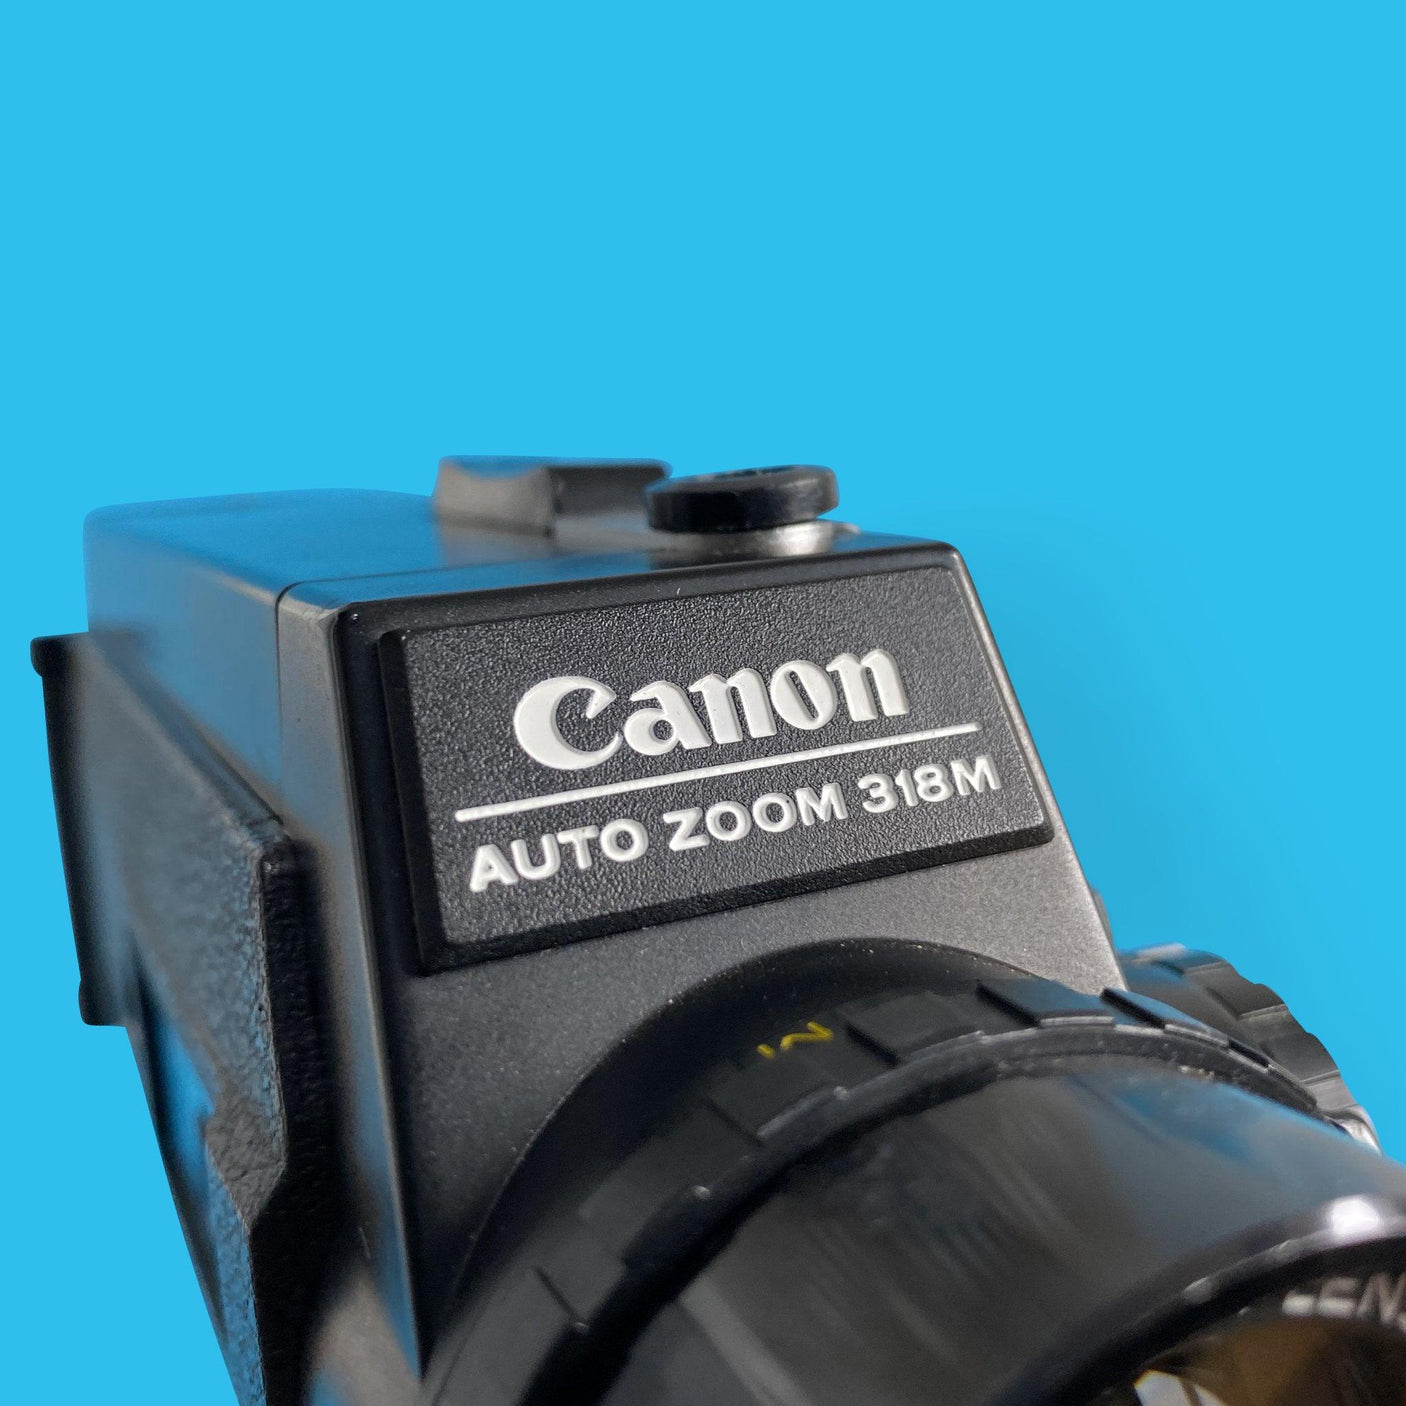 Canon Auto Zoom 318M Super 8 Vintage Cine Camera